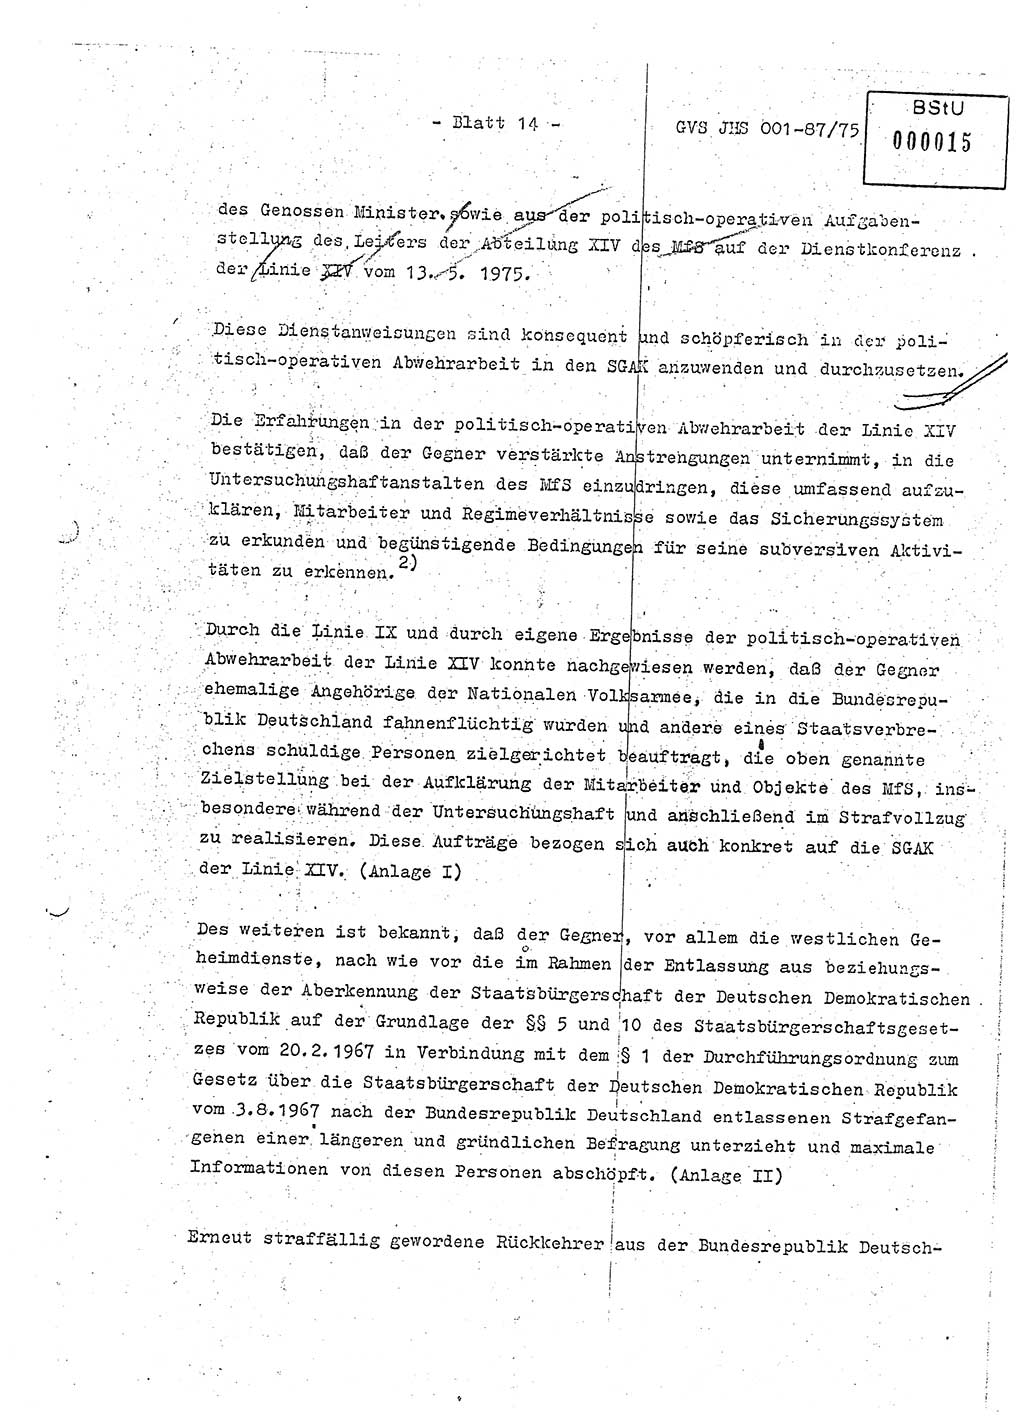 Diplomarbeit Hauptmann Volkmar Heinz (Abt. ⅩⅣ), Oberleutnant Lothar Rüdiger (BV Lpz. Abt. Ⅺ), Ministerium für Staatssicherheit (MfS) [Deutsche Demokratische Republik (DDR)], Juristische Hochschule (JHS), Geheime Verschlußsache (GVS) o001-87/75, Potsdam 1975, Seite 14 (Dipl.-Arb. MfS DDR JHS GVS o001-87/75 1975, S. 14)